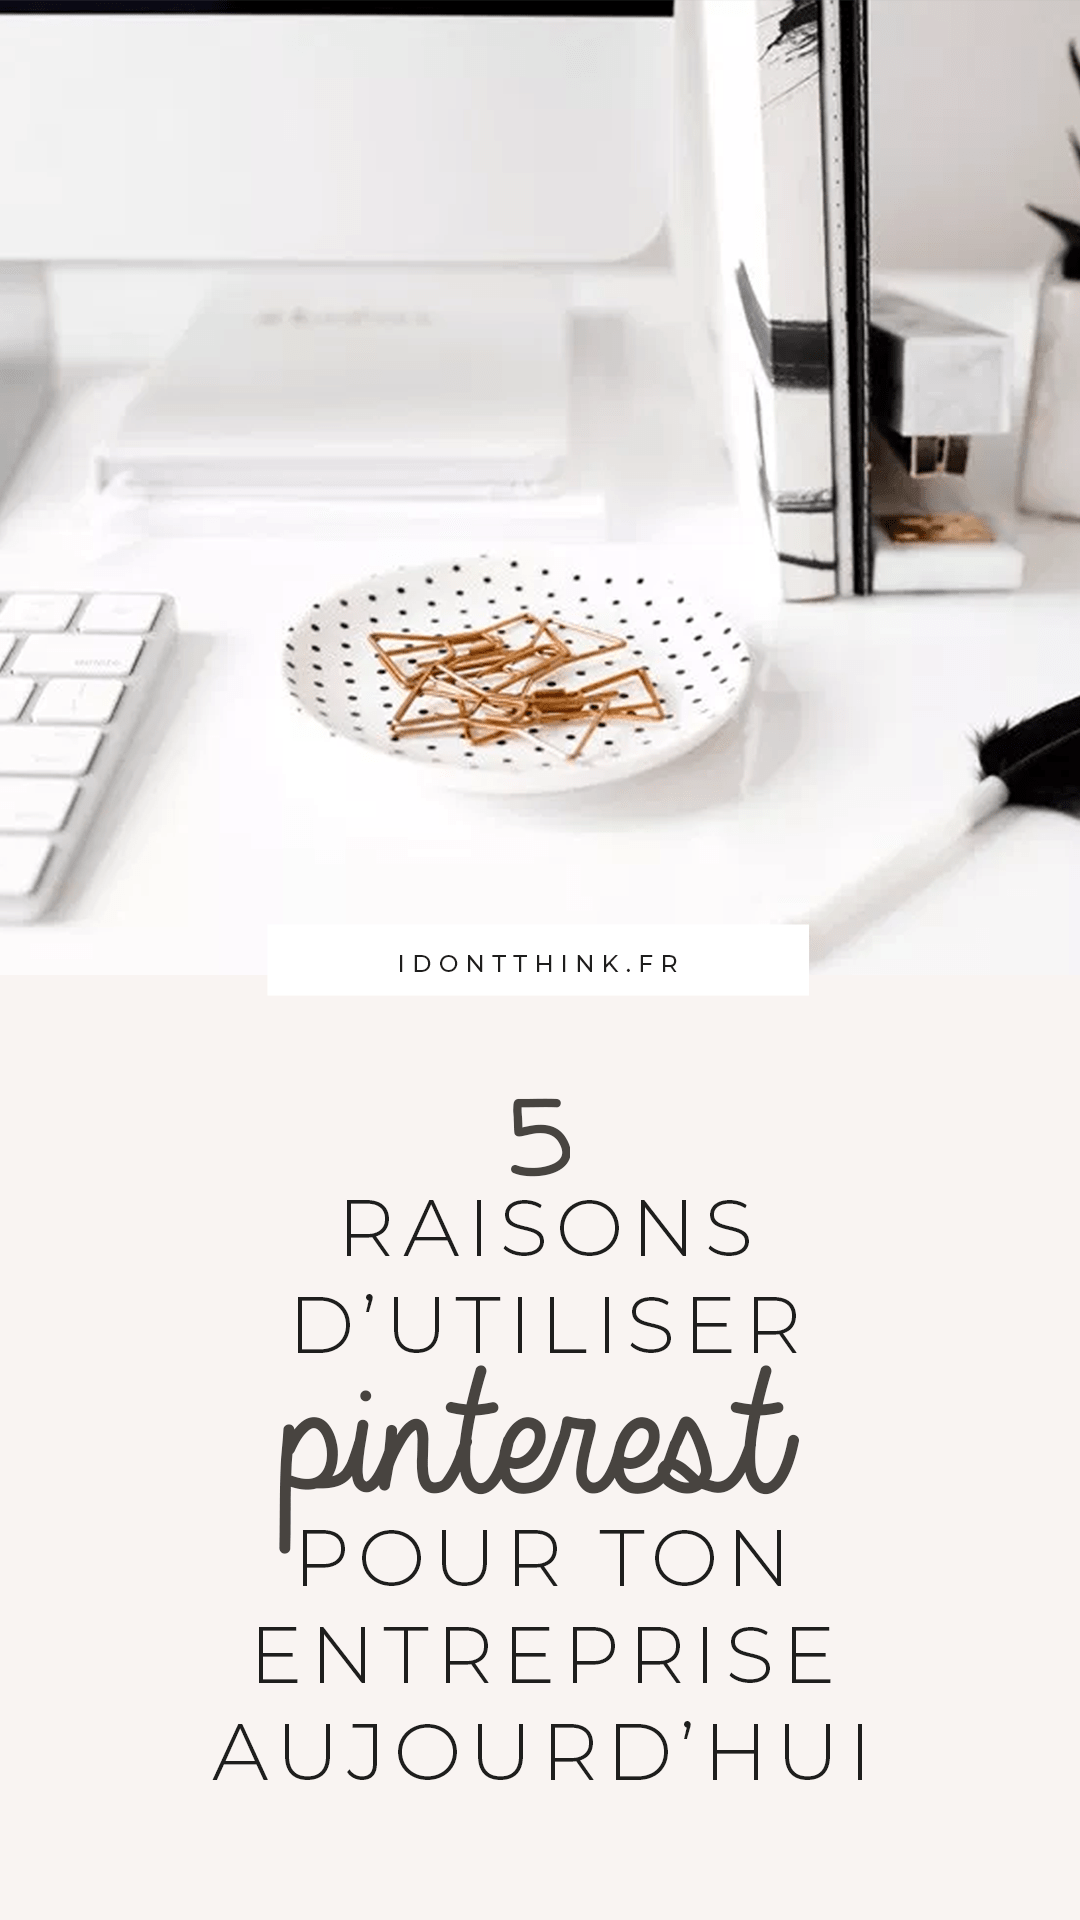 5 raisons d'utiliser Pinterest pour ton entreprise aujourd'hui